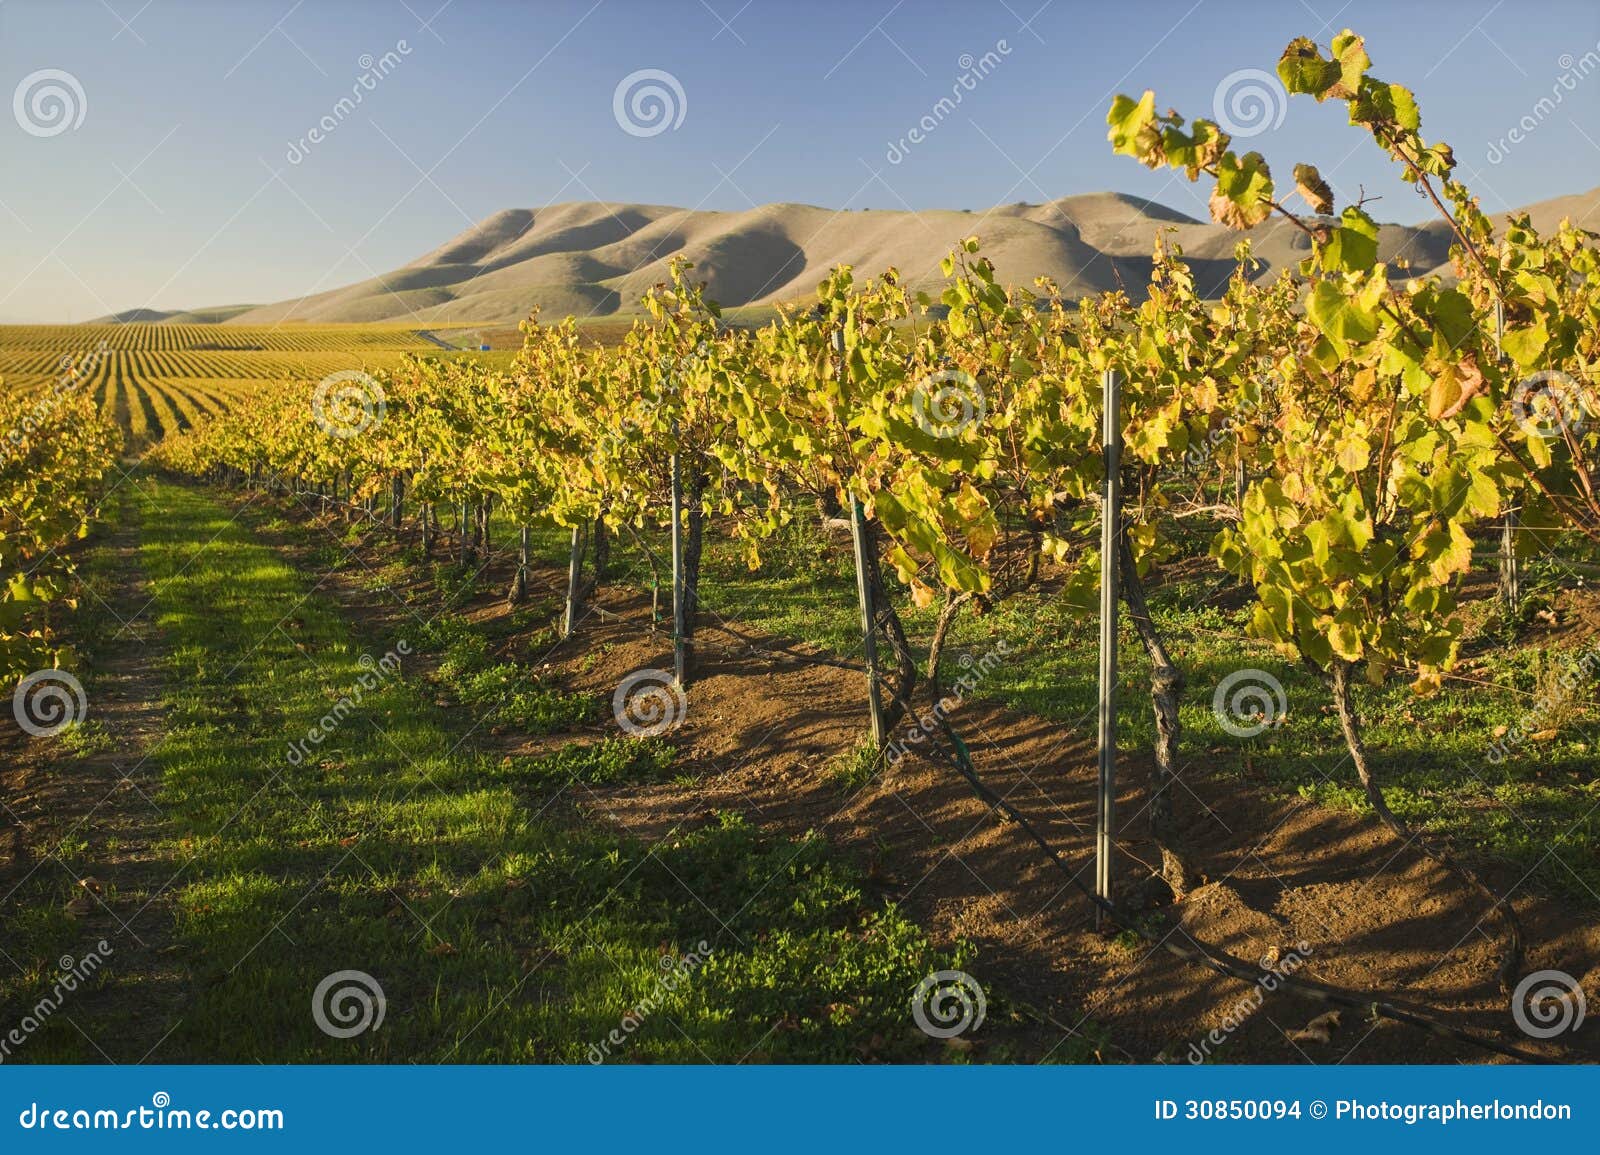 vineyard in santa maria california